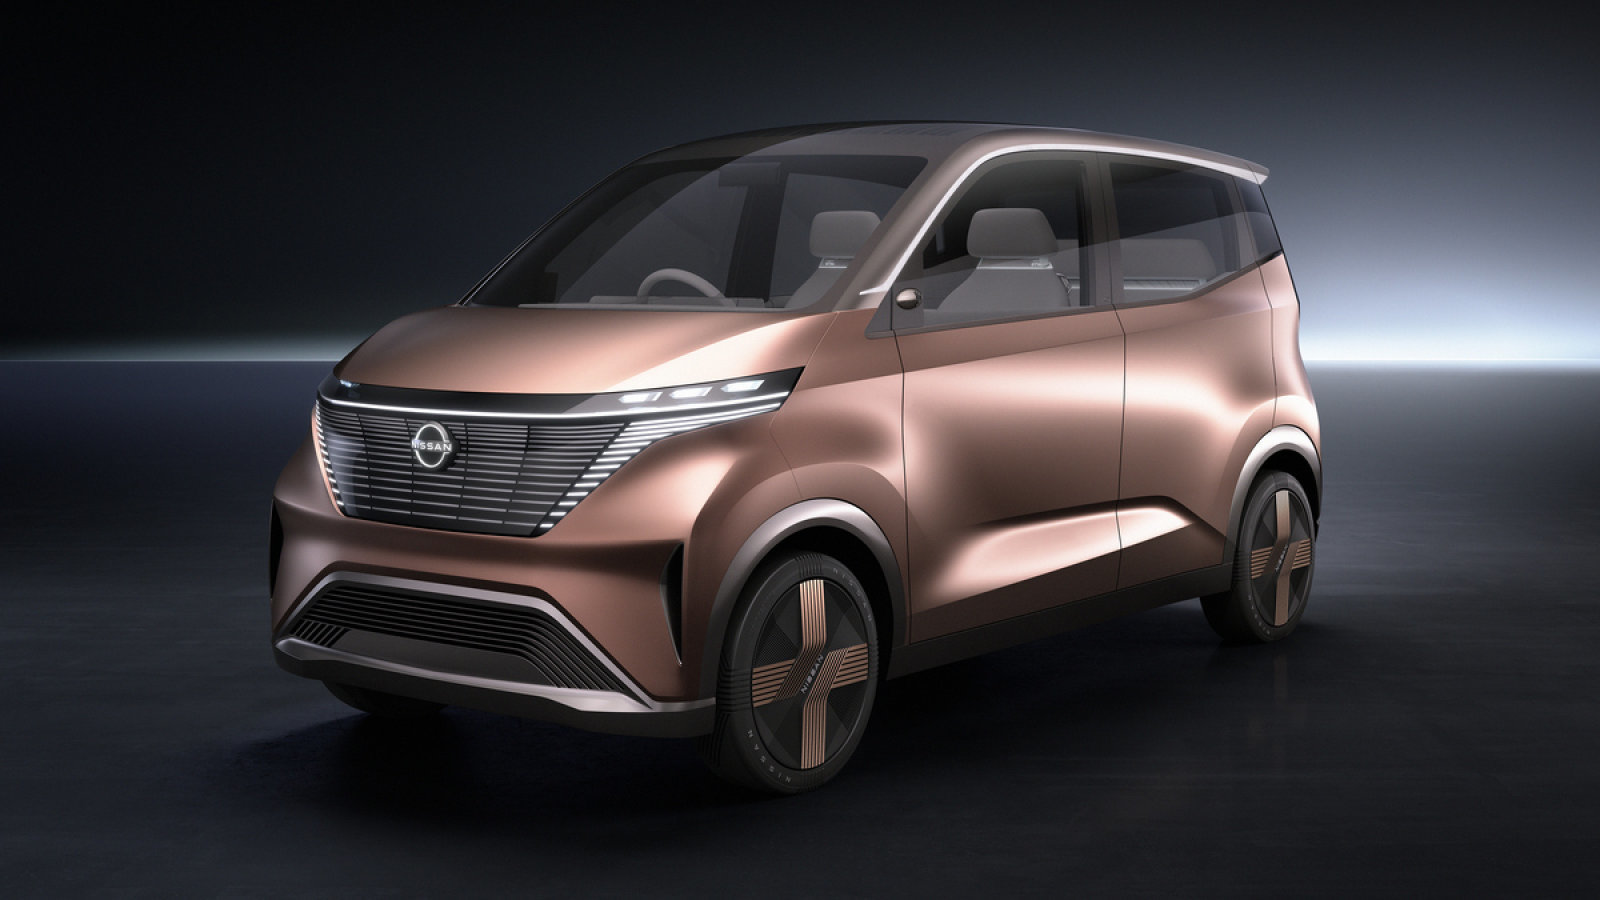 IMk Concept: Hướng đi mới trong thiết kế xe Nissan